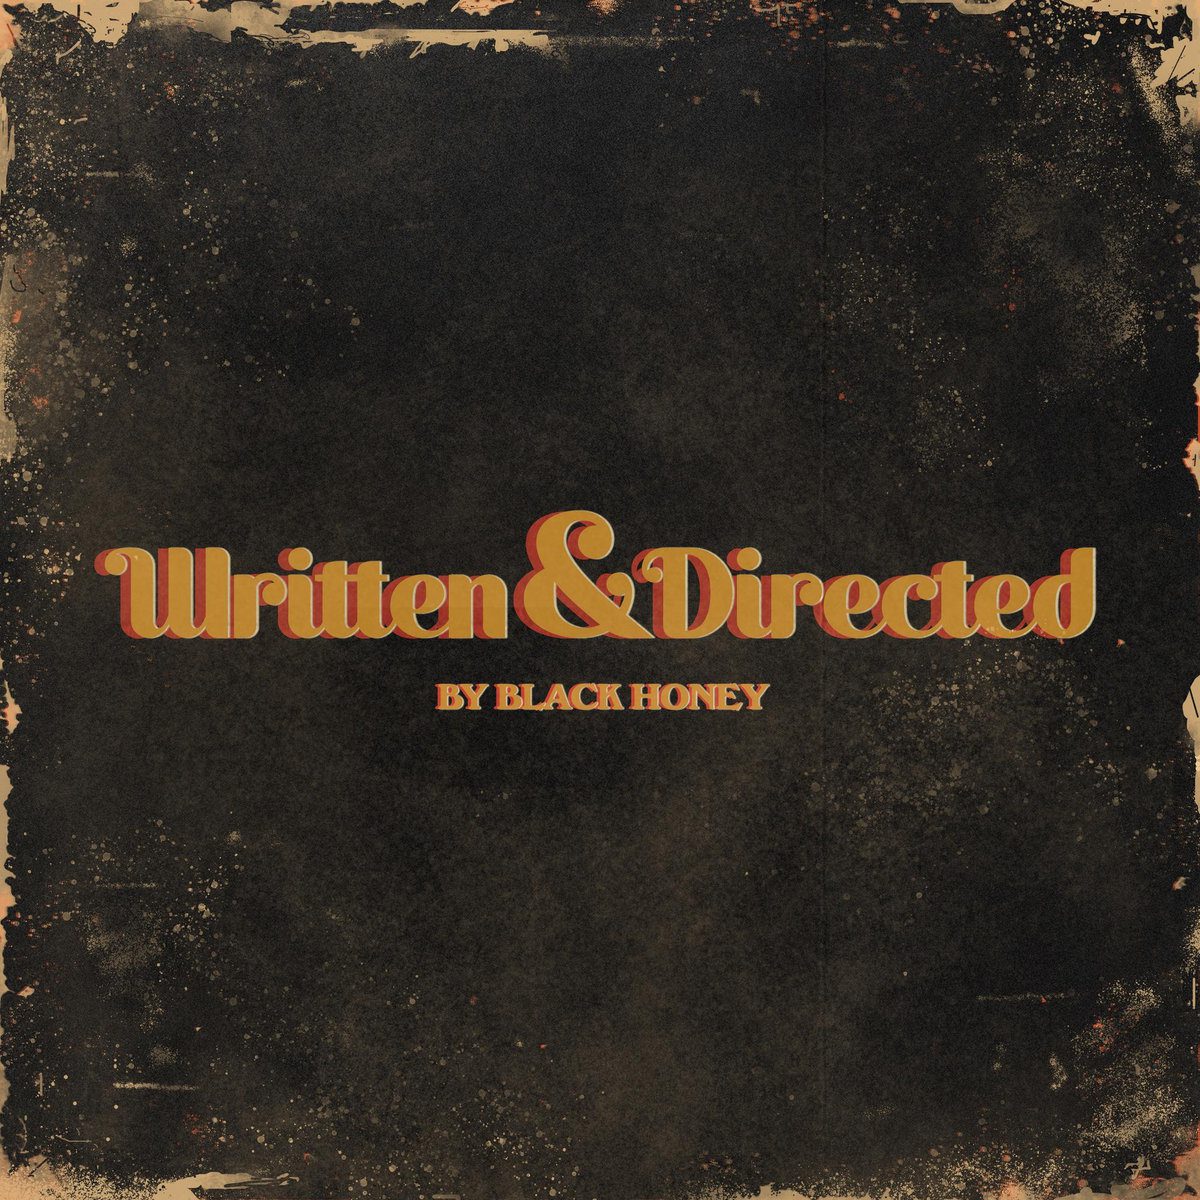 Black Honey – Written & Directed (2021)